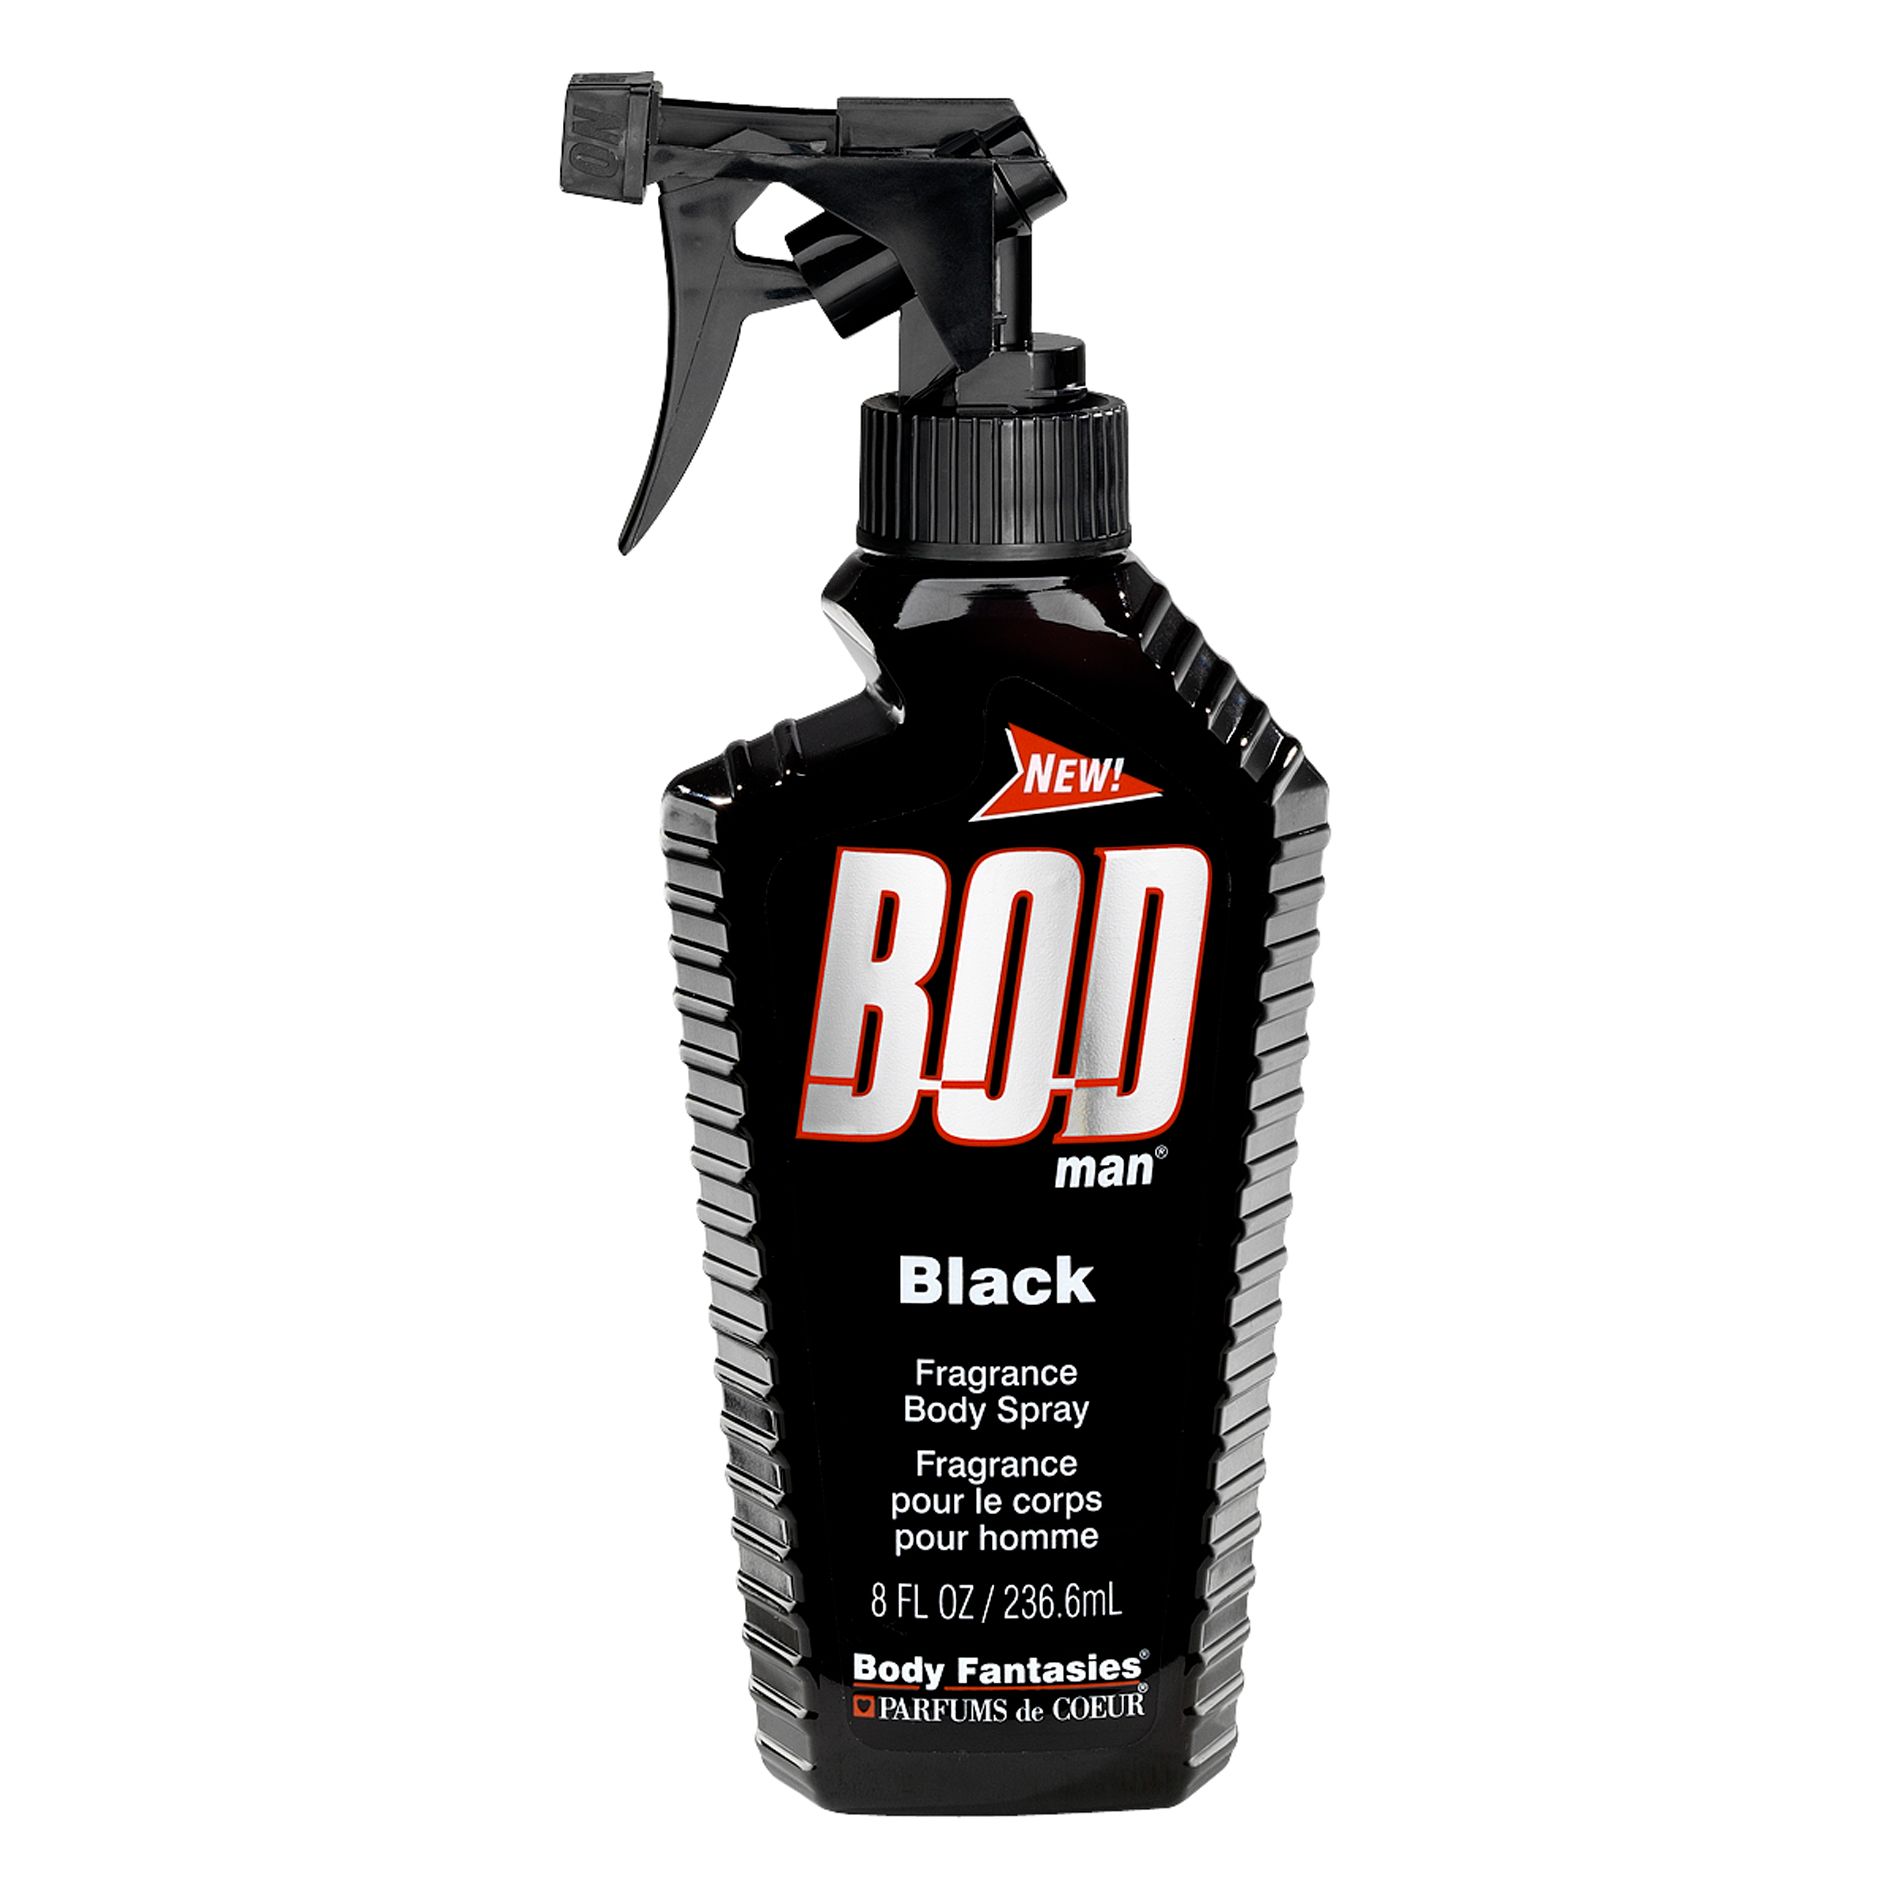 BOD Man Parfums de Coeur  Fragrance Body Spray, Black, 8 fl oz (236.6 ml)